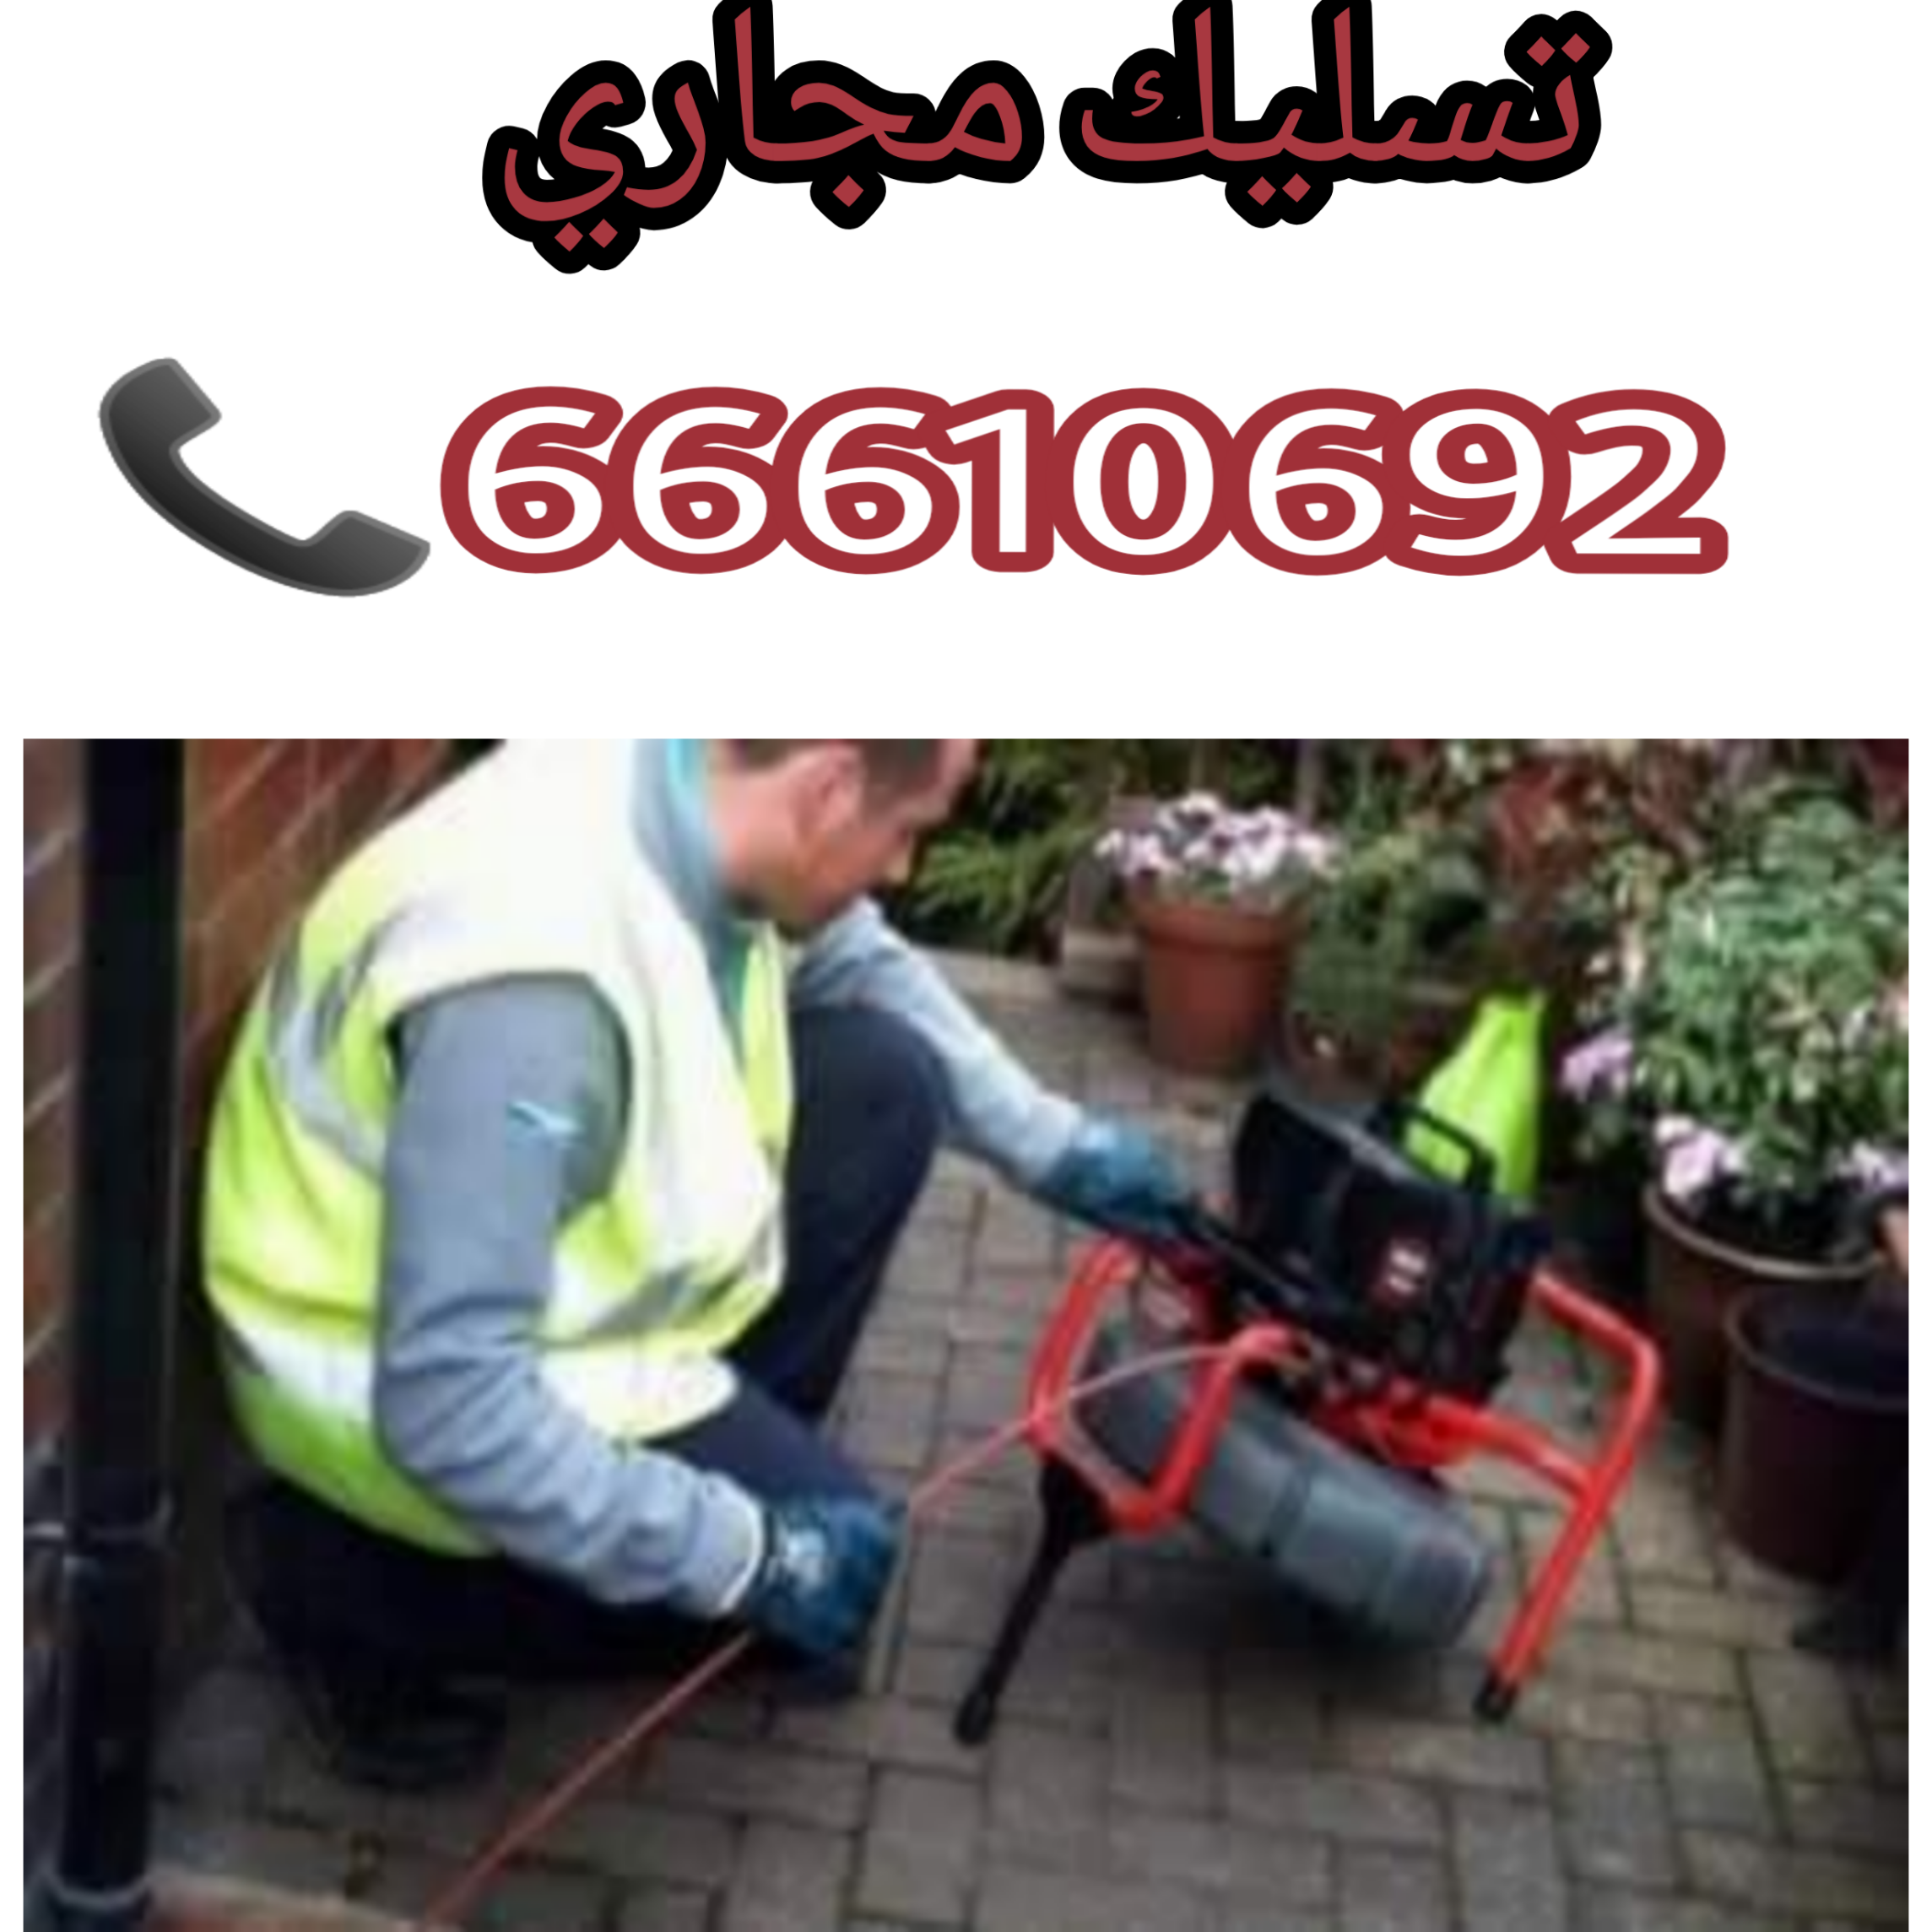 تسليك مجاري الشامية / 66610692 / صيانة وتركيب ادوات صحية في الكويت